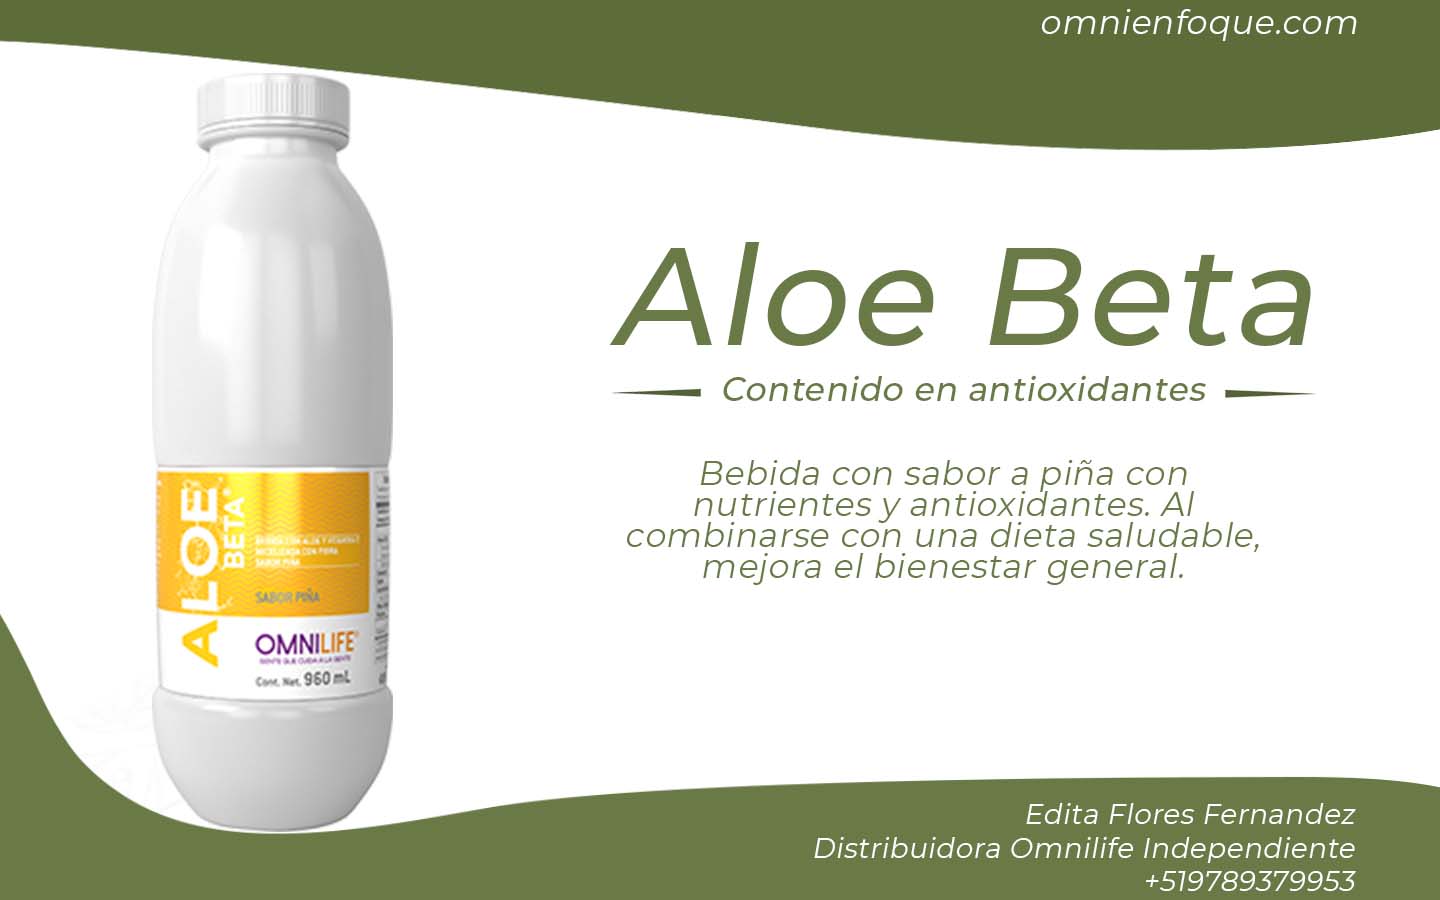 Aloe Beta de Omnilife es una bebida con antioxidantes que brindan el bienestar general